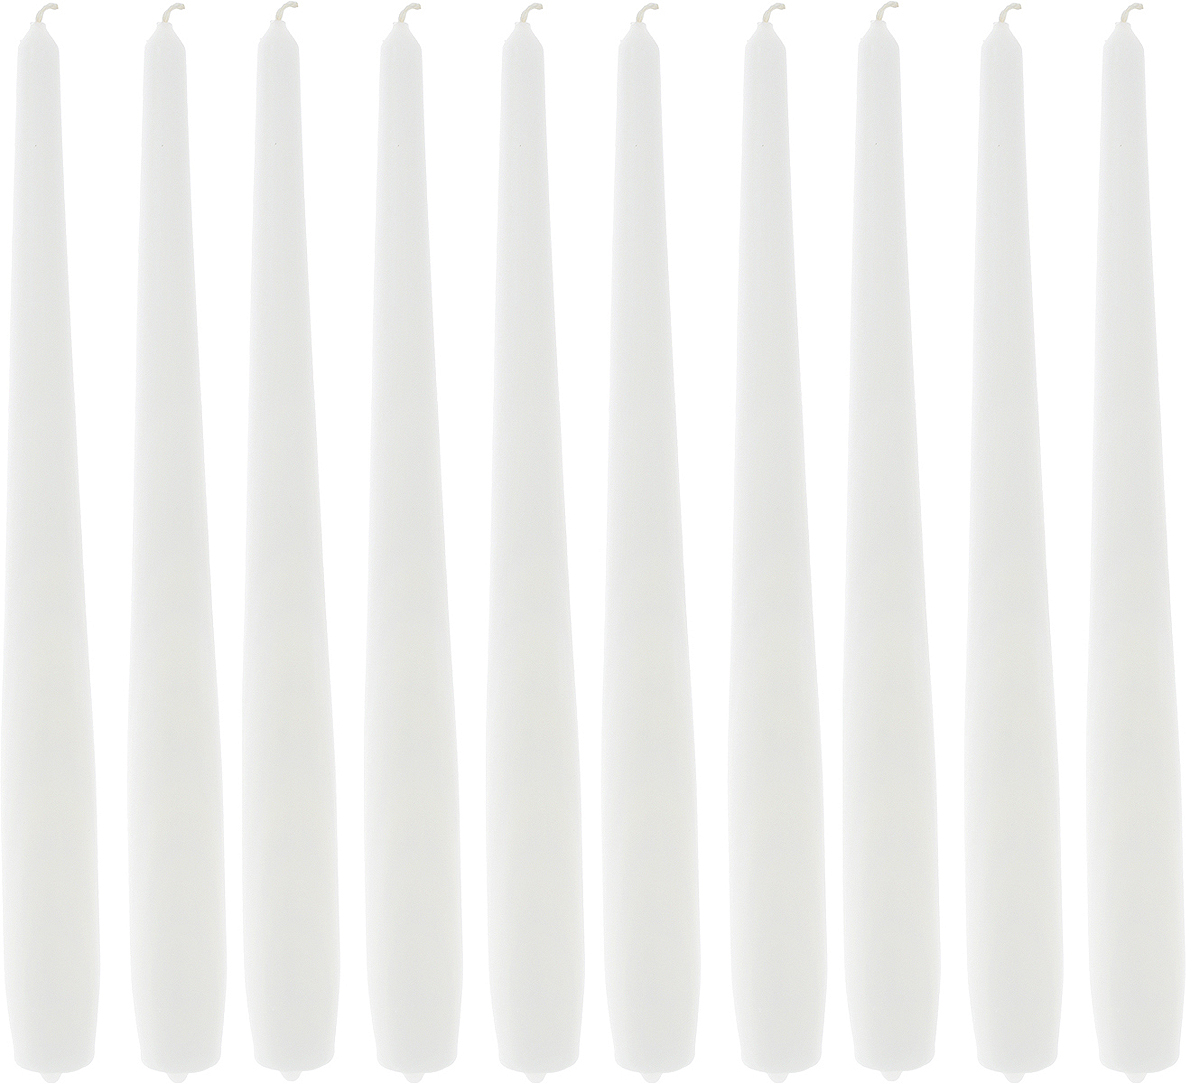 фото Набор свечей "Омский cвечной завод", цвет: белый, высота 24 см, 10 шт Омский свечной завод